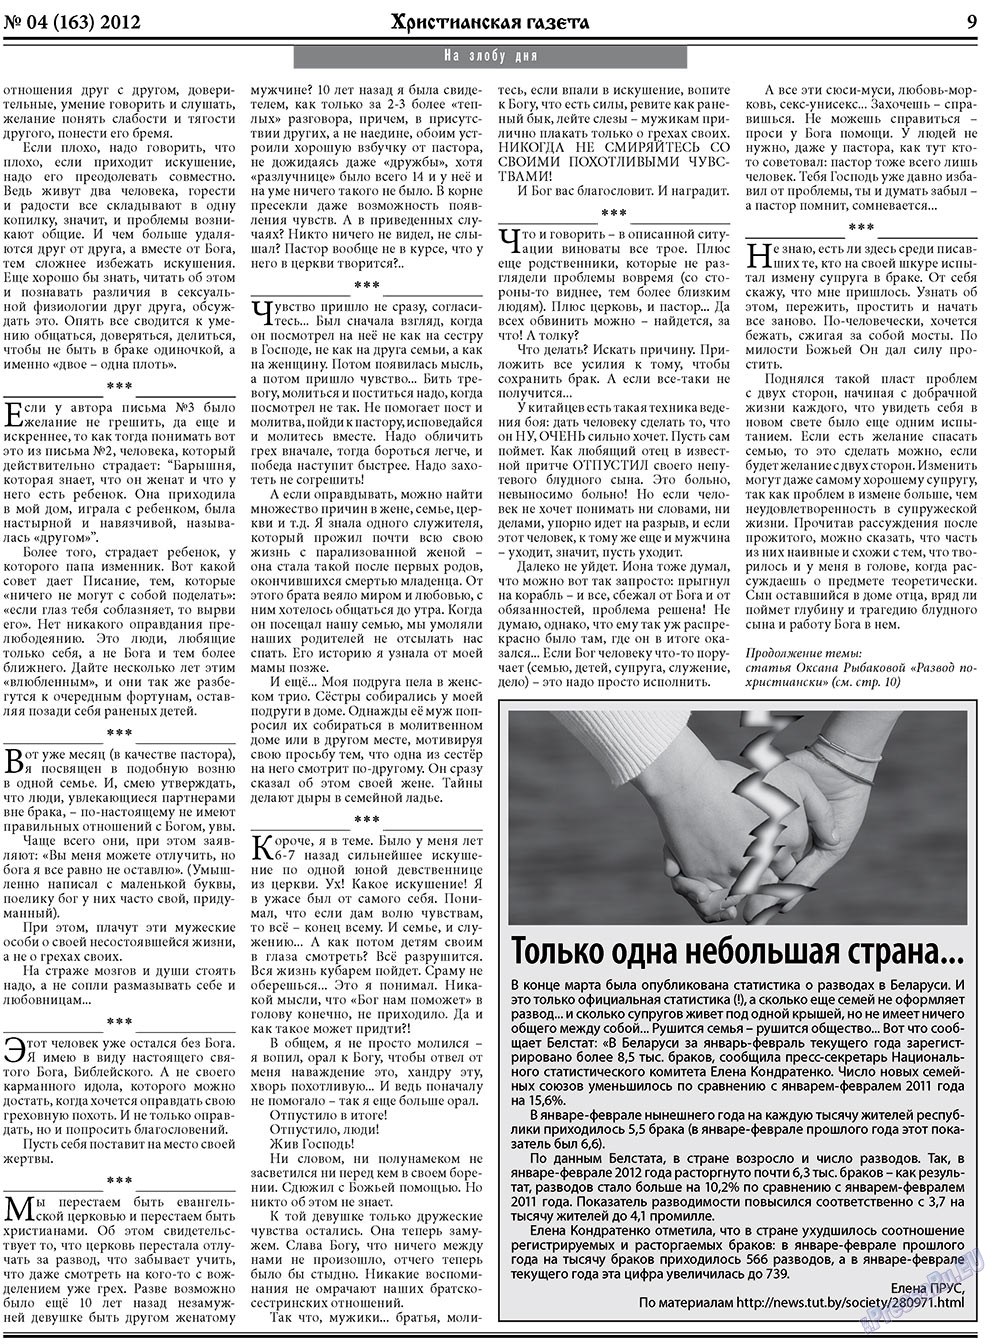 Христианская газета, газета. 2012 №4 стр.9